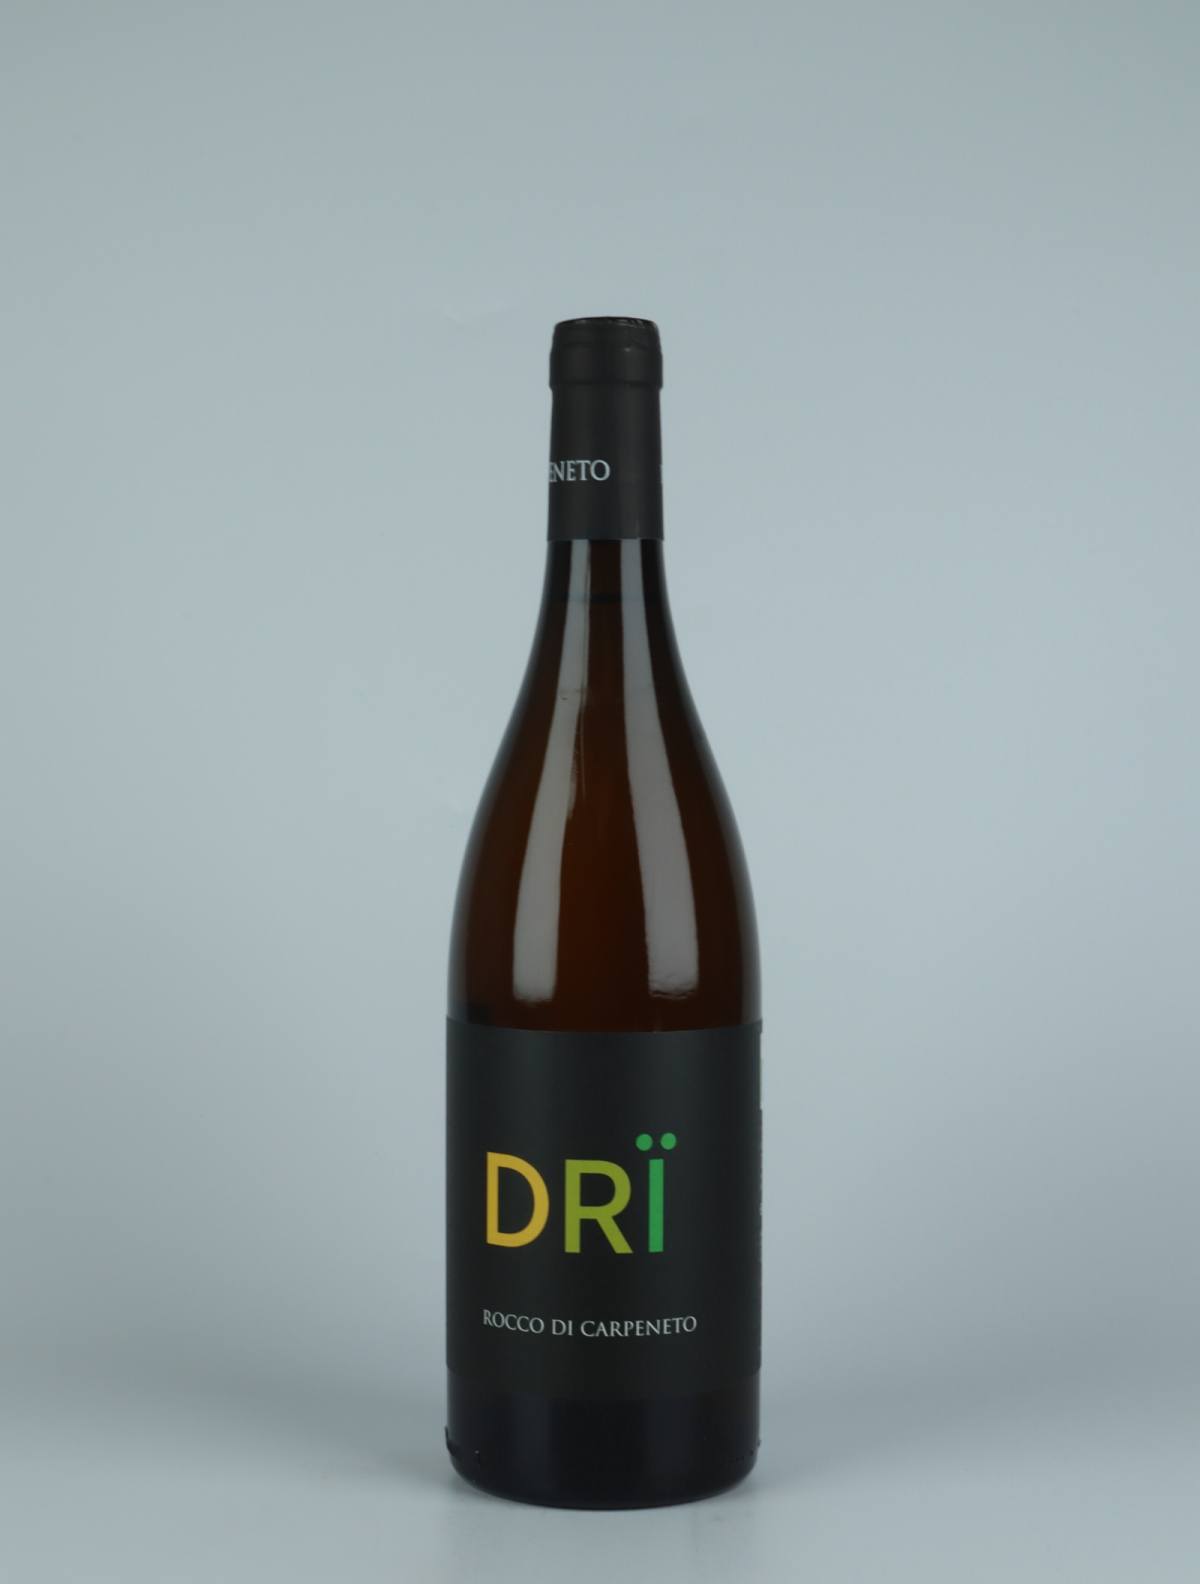 A bottle 2021 Dri White wine from Rocco di Carpeneto, Piedmont in Italy